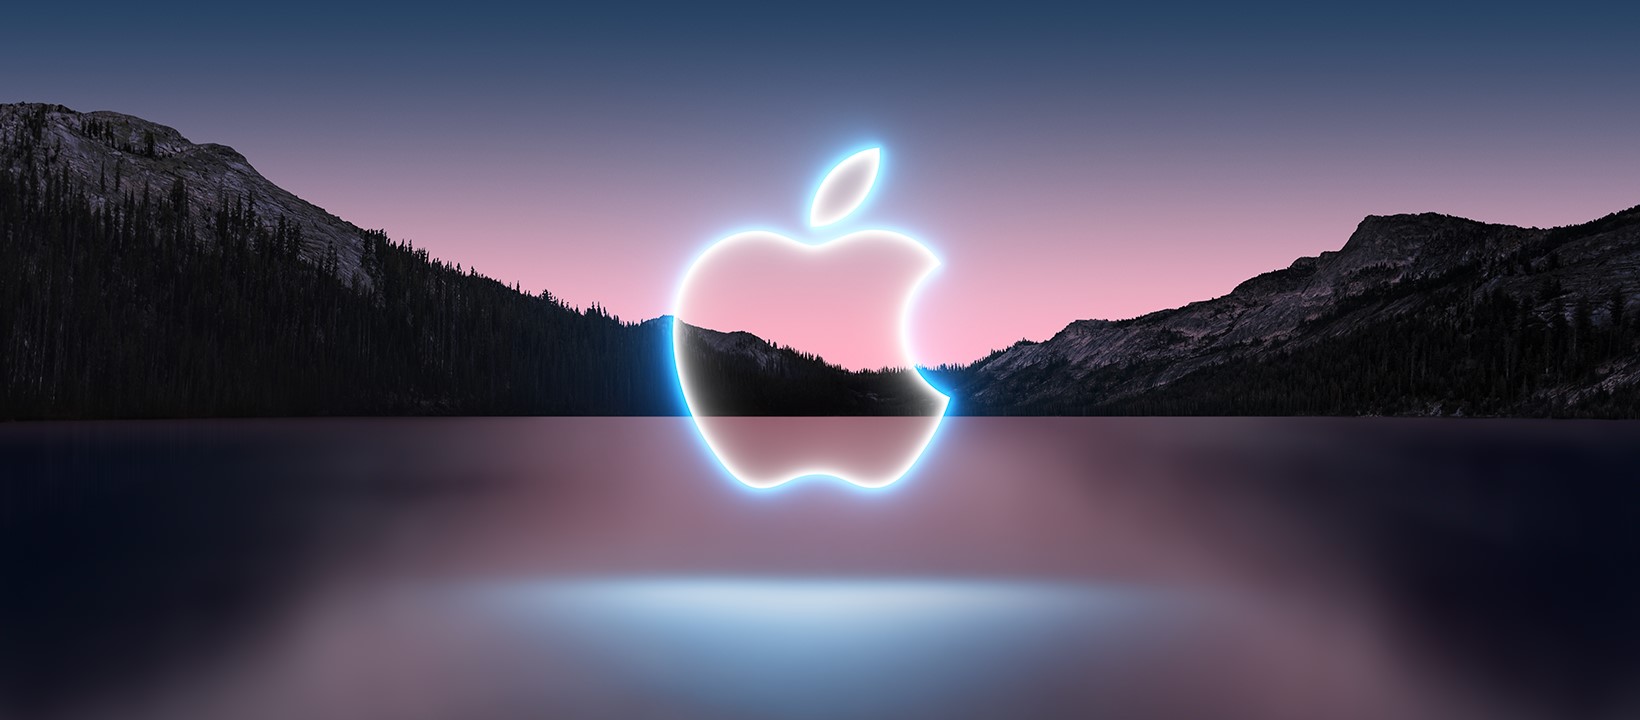 Apple, nel 2022 tantissime novità per tutti - 01022022 www.computermagazine.it